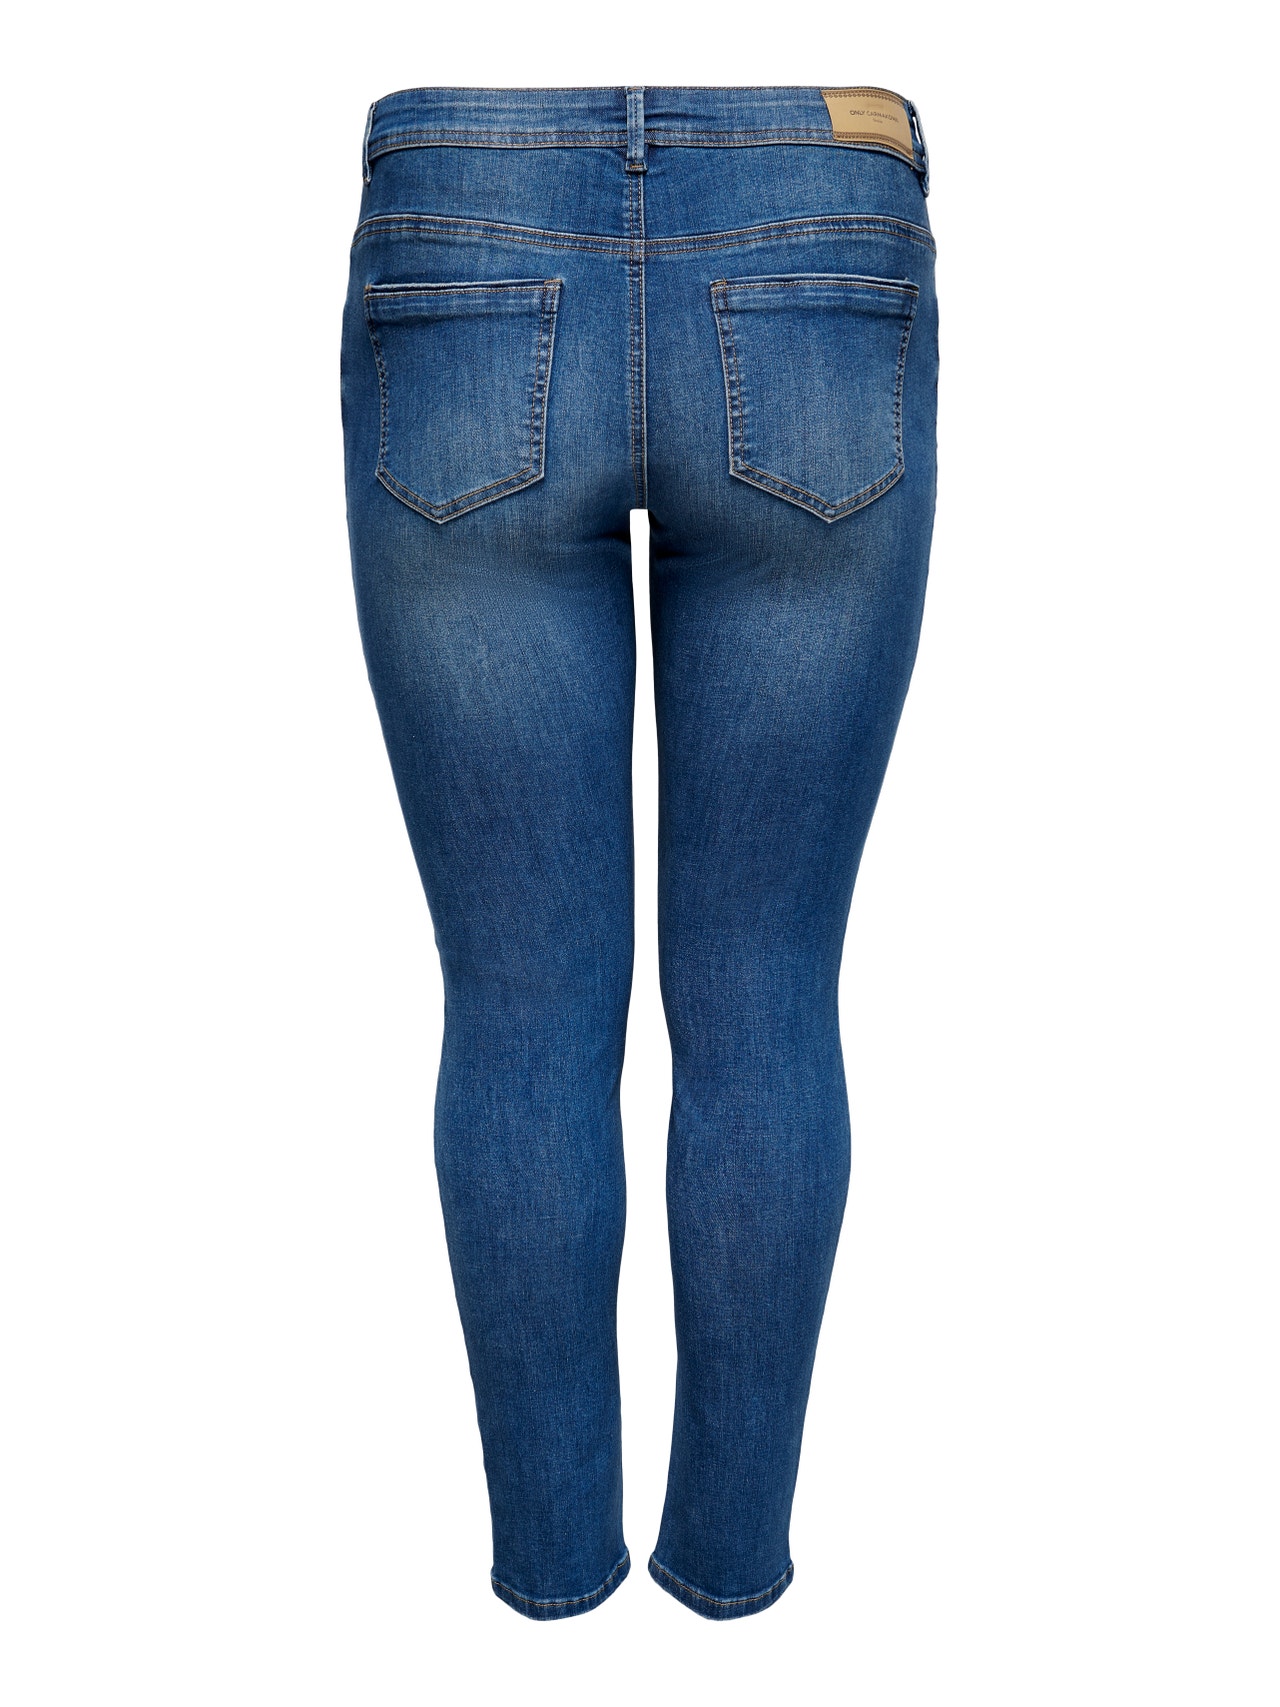 ONLY Skinny Fit Middels høy midje Jeans -Medium Blue Denim - 15231027